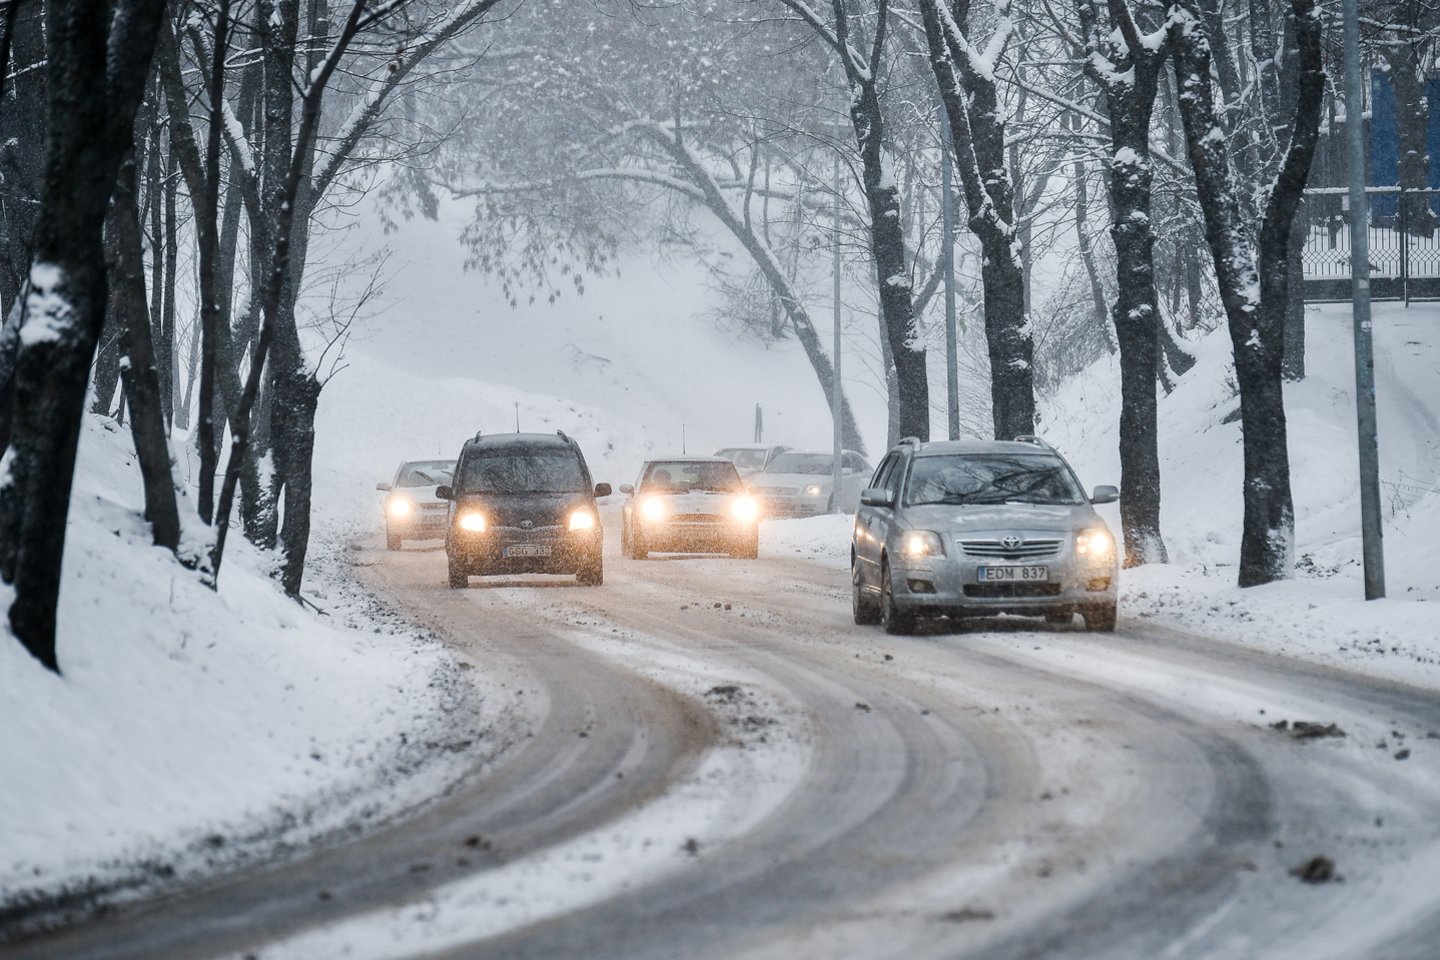 Penktadienį ryte eismo sąlygas Lietuvoje sunkina plikledis ir snygis, įspėja Automobilių kelių direkcija.<br>V.Ščiavinsko nuotr.